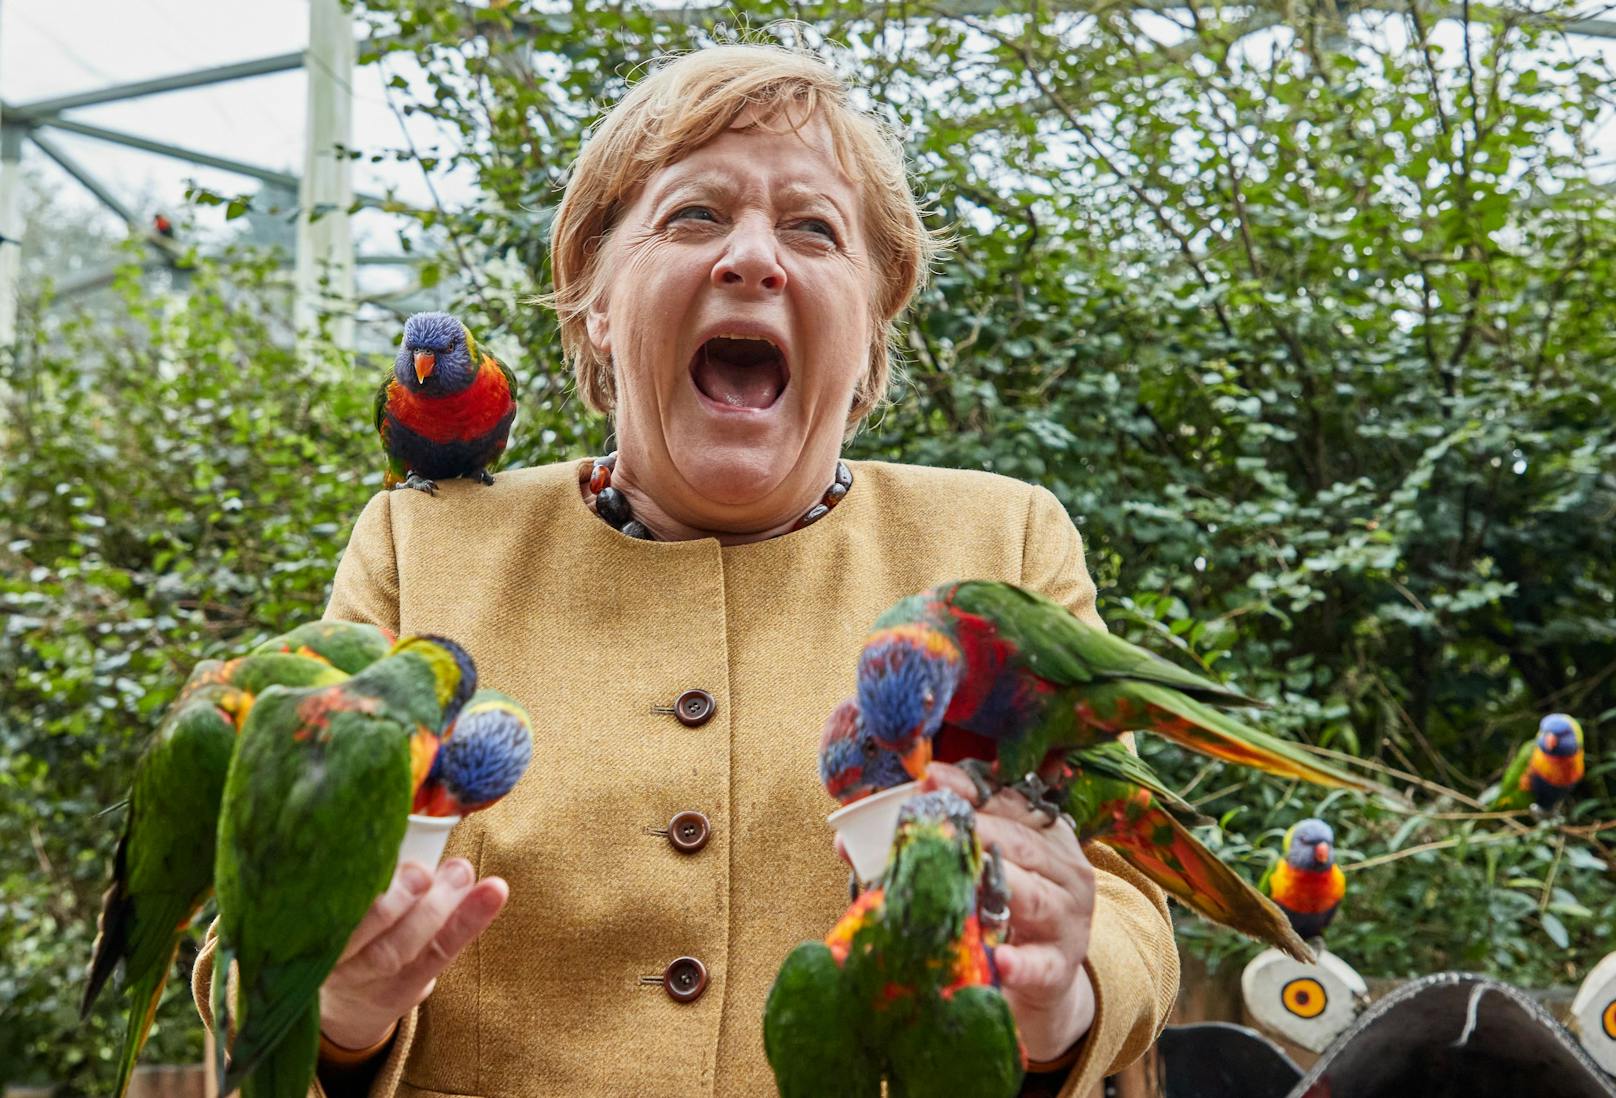 Ein Bild, das Schlagzeilen machte – Auf ihrer Abschiedstour besuchte die scheidende deutsche Bundeskanzlerin den Vogelpark Marlow. Einer der Lori-Papageien fand Angela Merkel wortwörtlich zum Anbeißen. ---&gt; <a href="https://www.heute.at/s/der-letzte-schrei-merkel-geht-nicht-leise-in-pension-100164826">ARTIKEL </a><br>